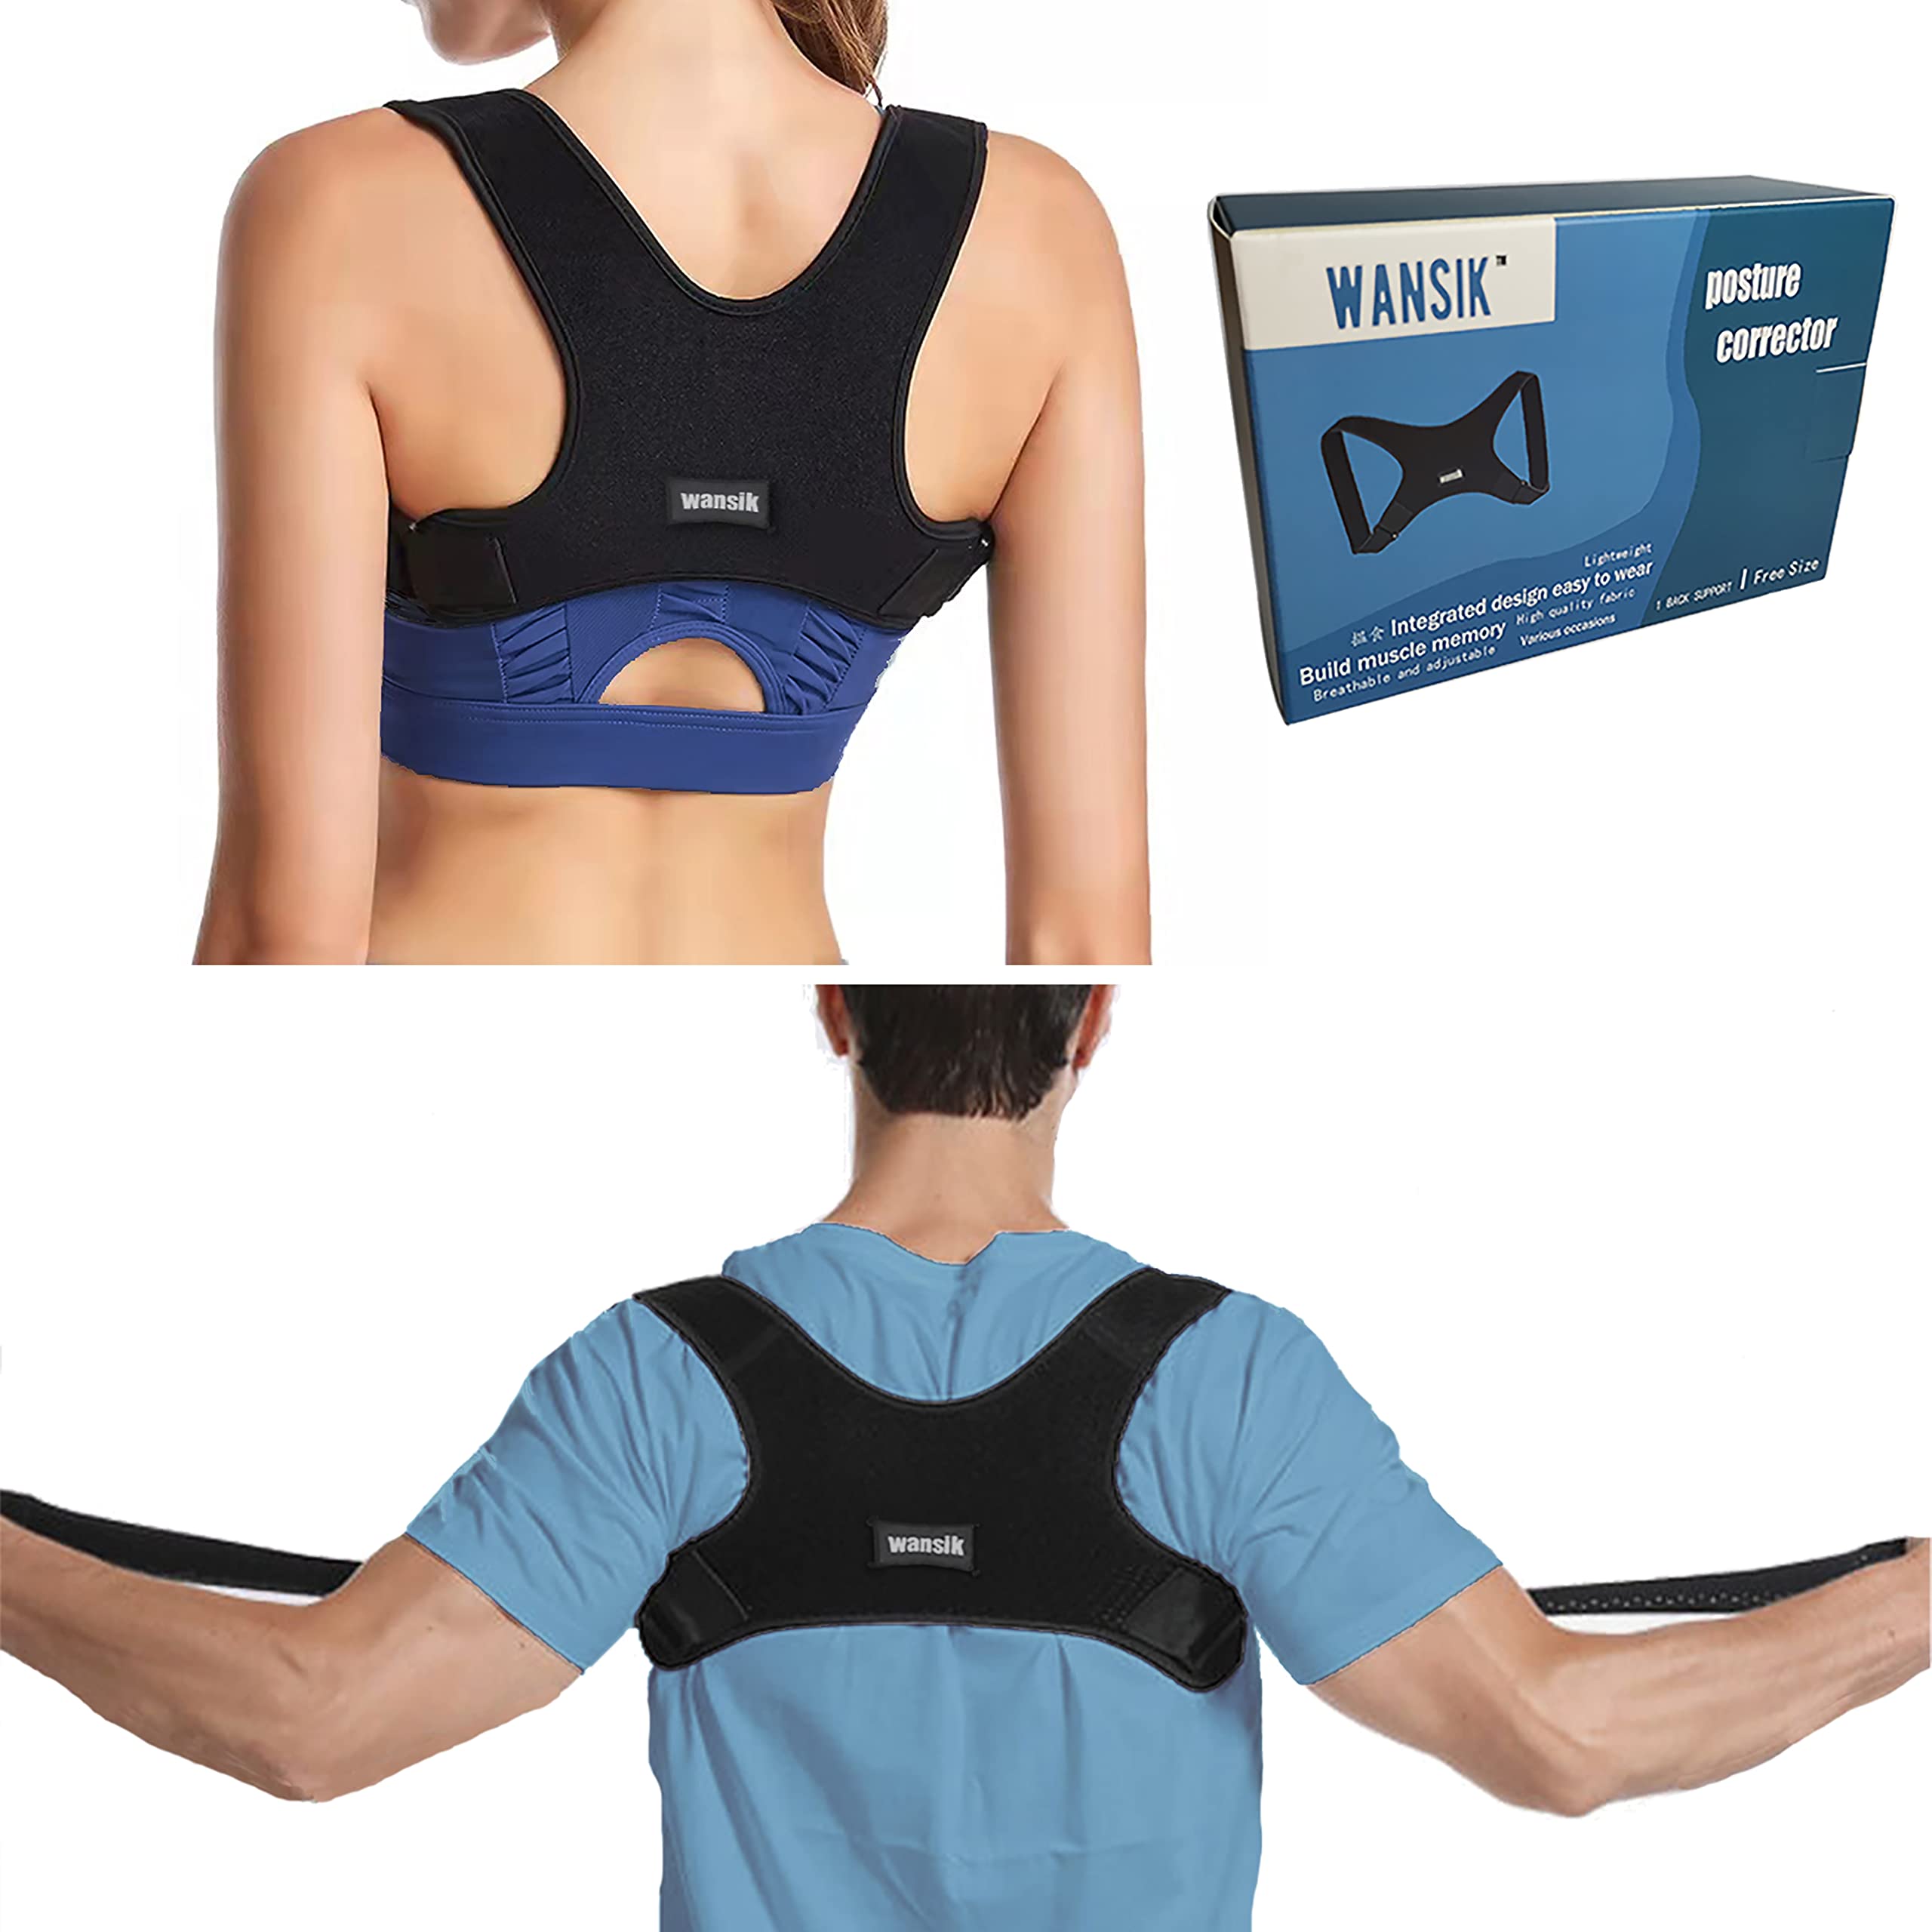 Plus Size Adjustable Posture Corrector Back Support Shoulder Brace